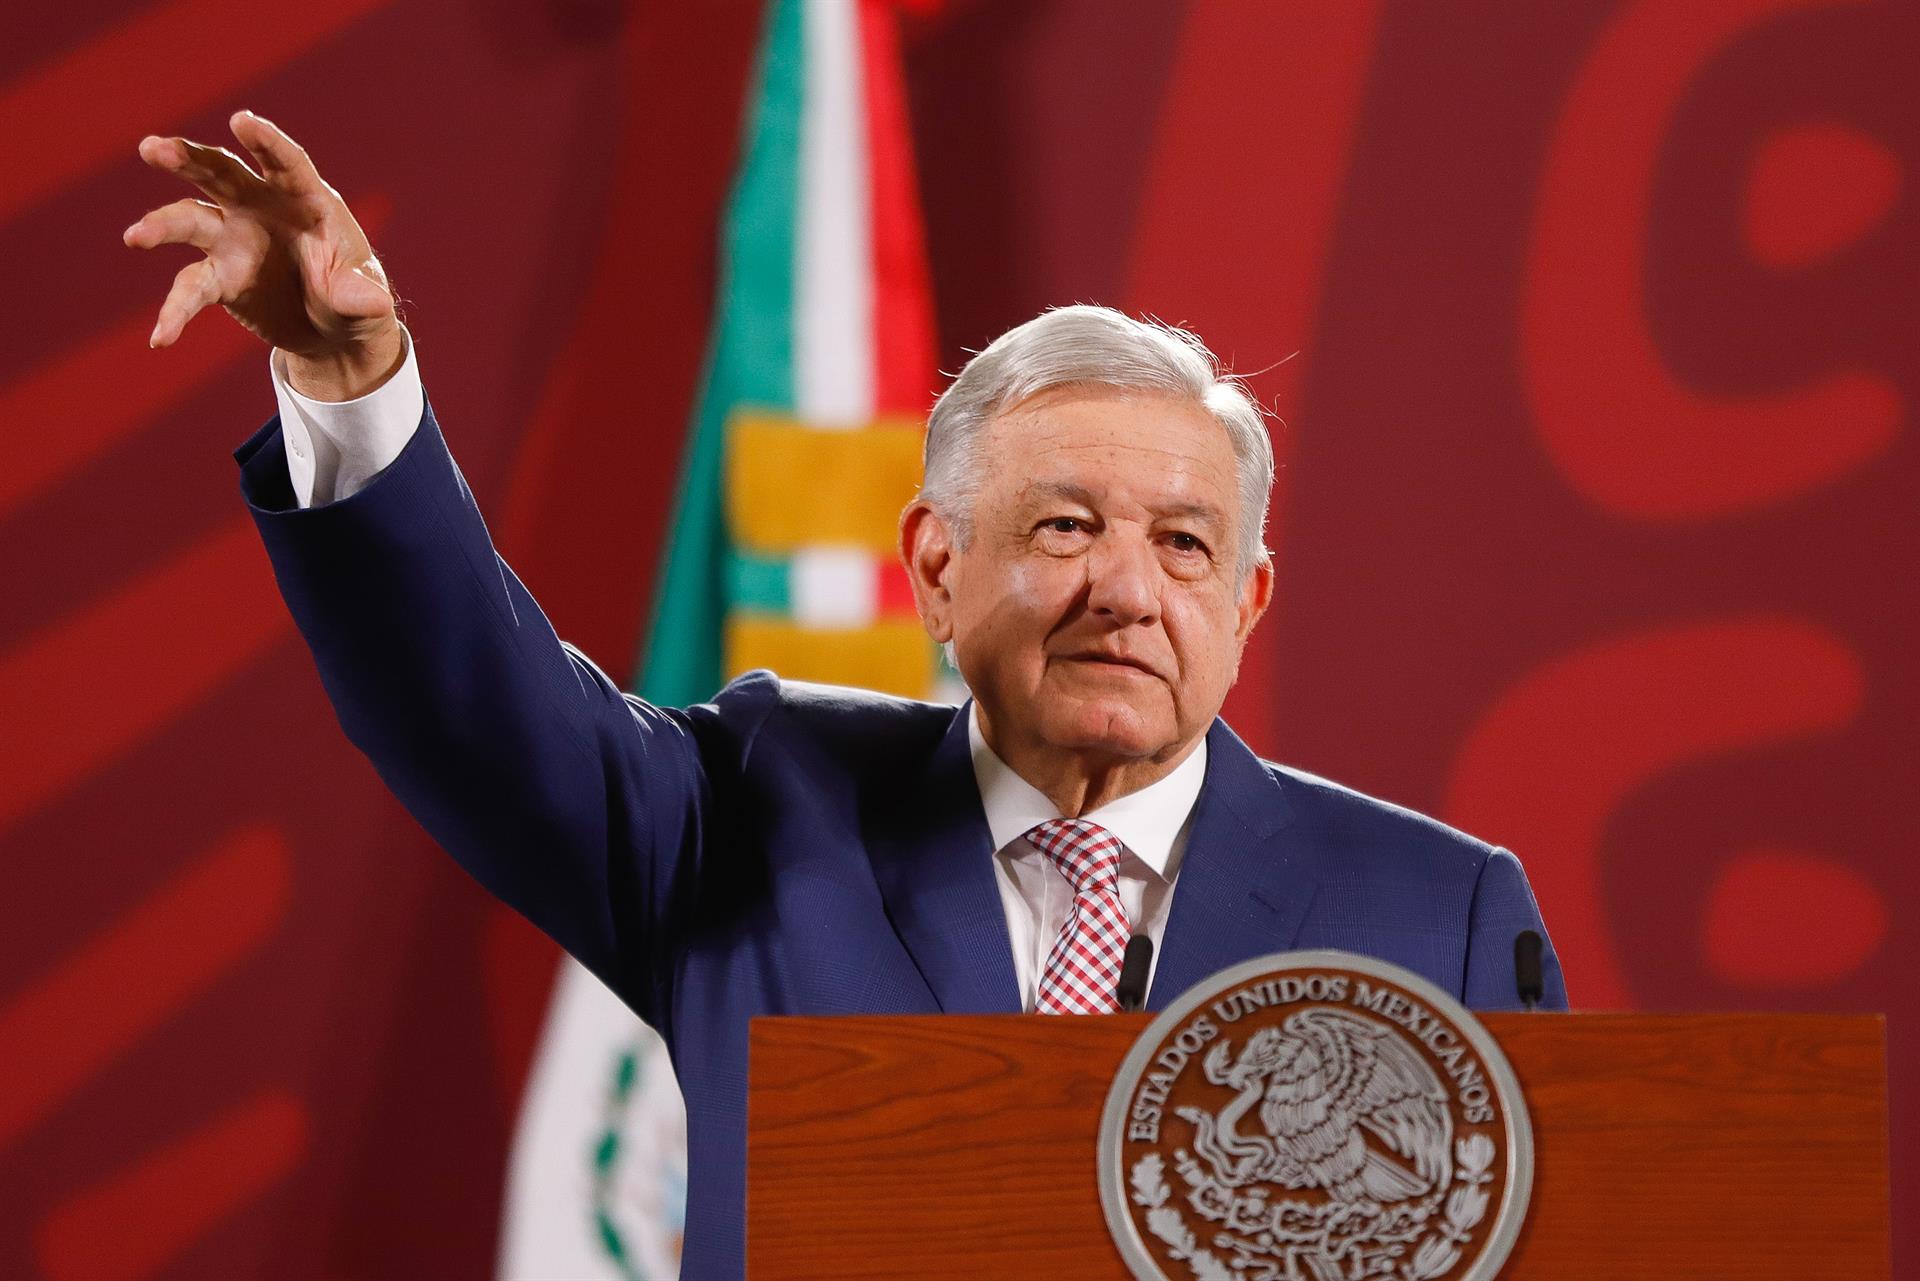 La recaptura de Ovidio Guzmán enfrenta a López Obrador con sus rivales políticos